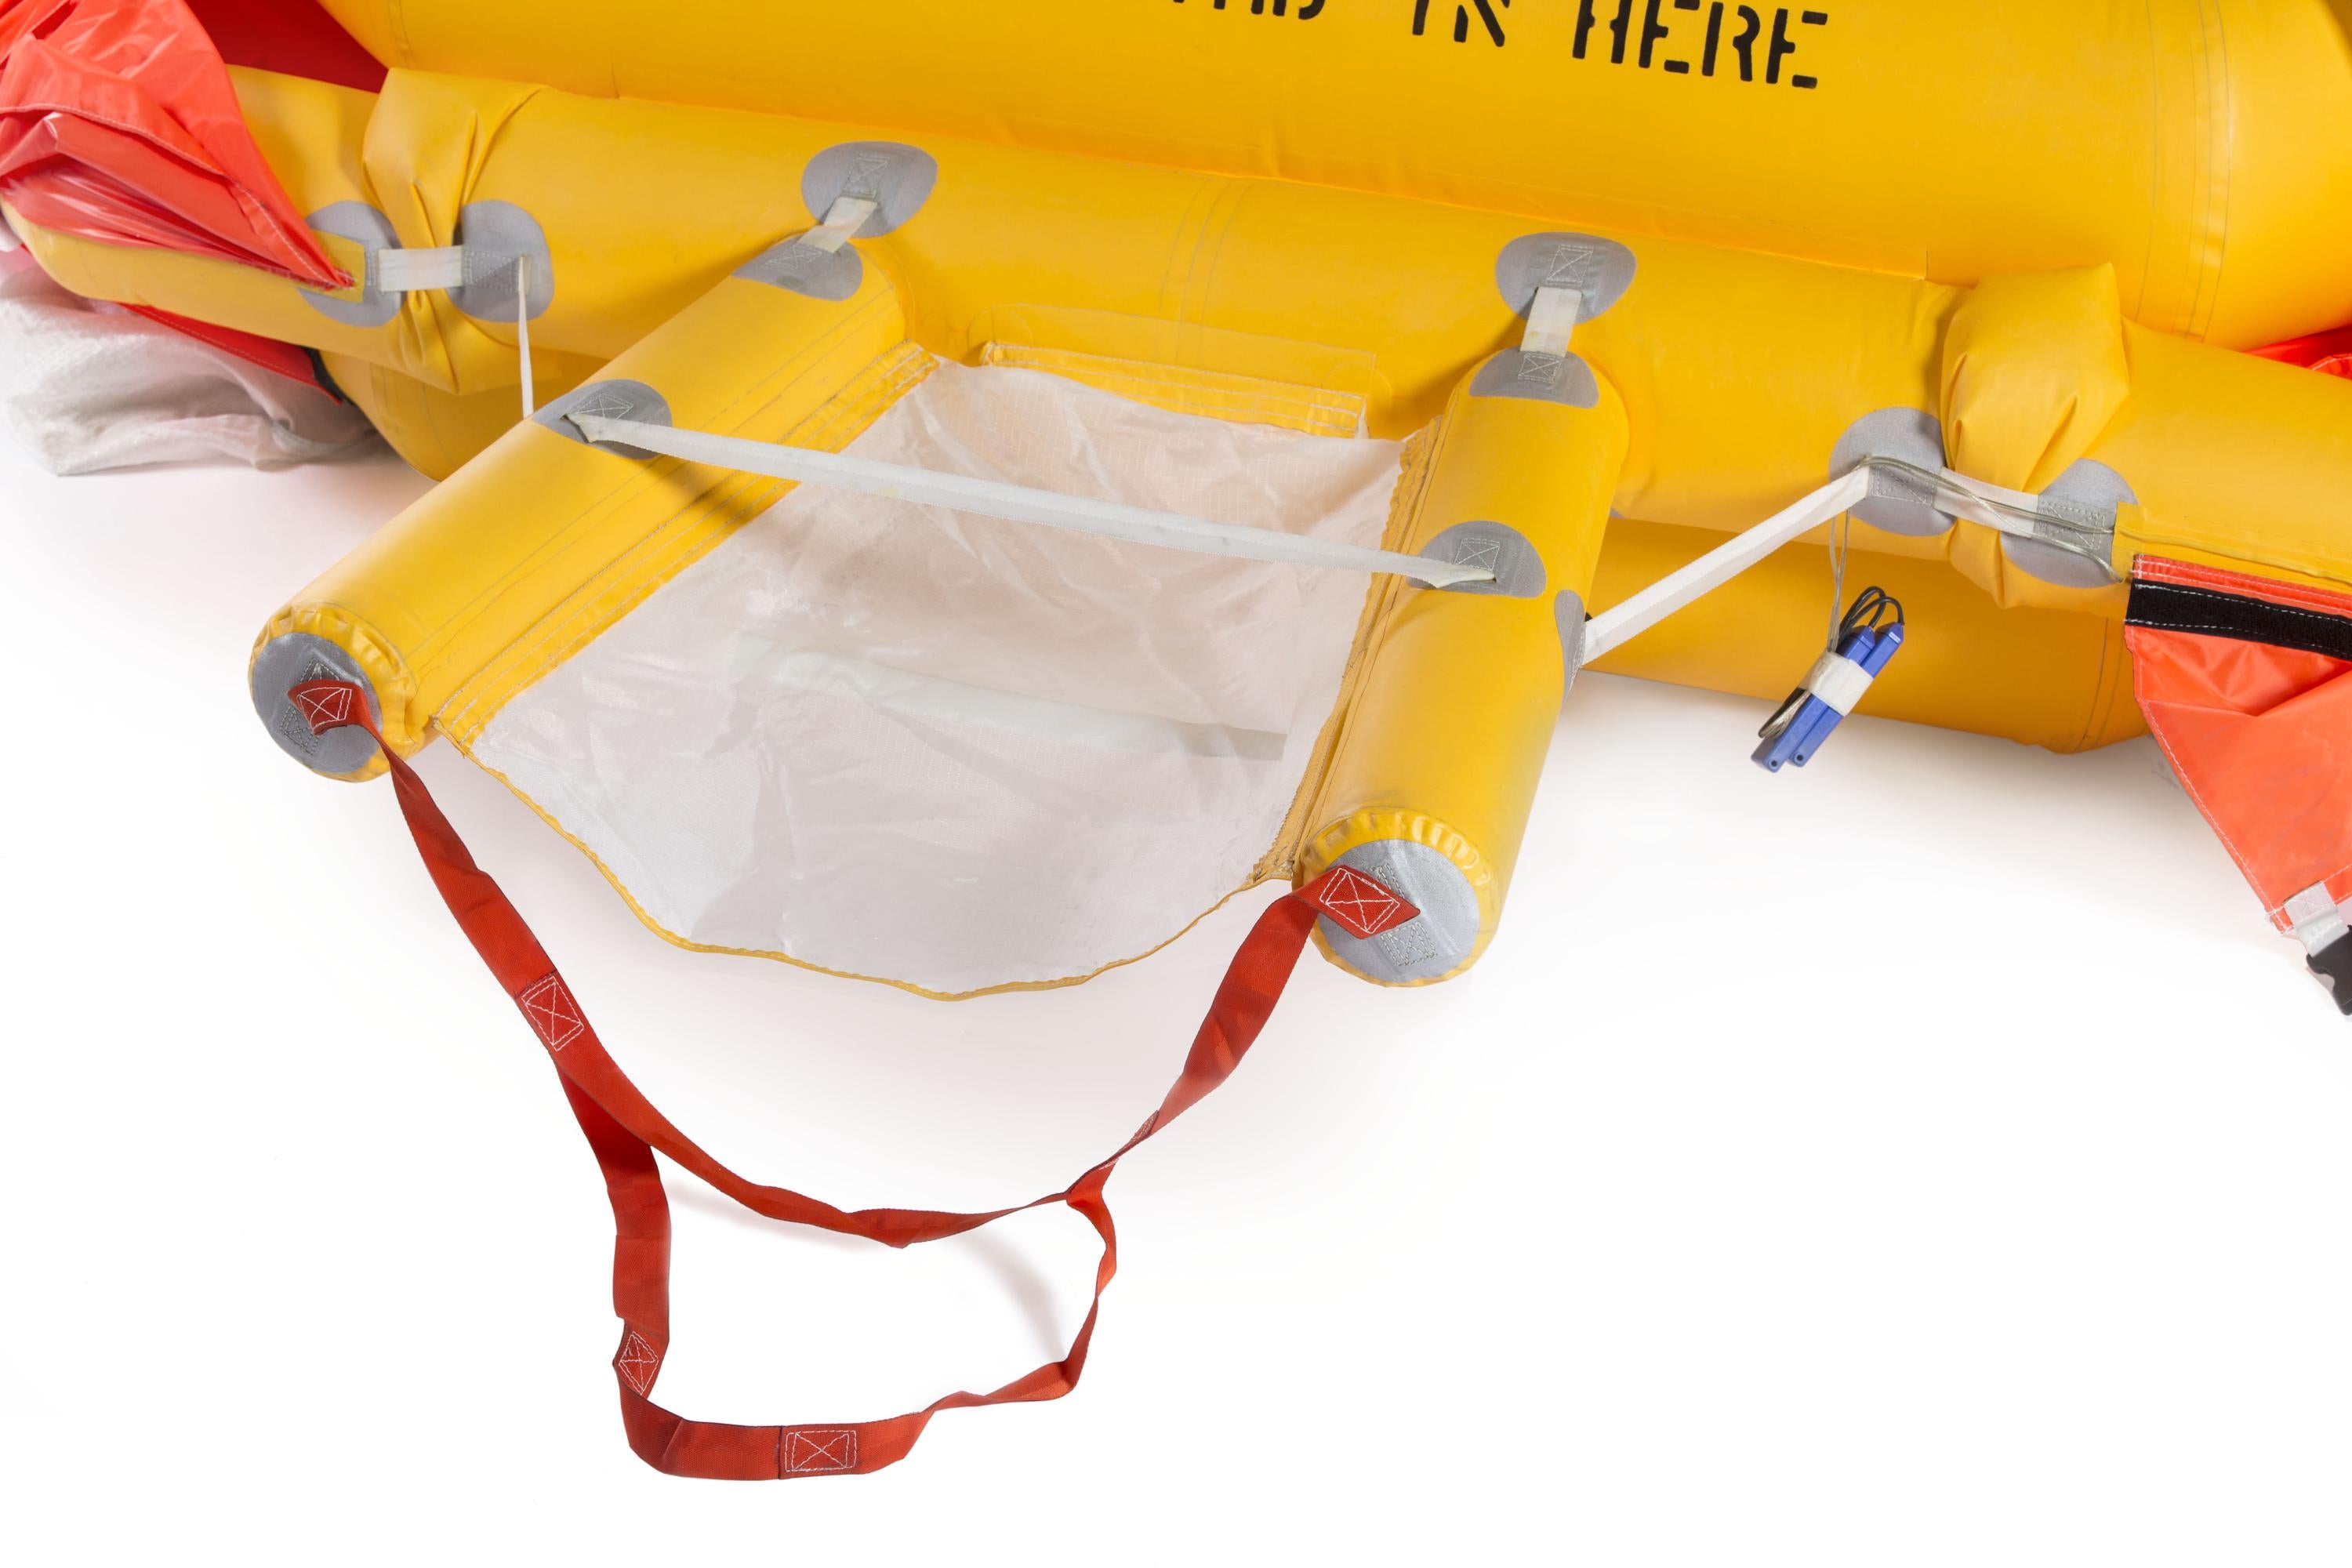 412/212/210 tri bag float system with liferafts, internal hoist compatible 